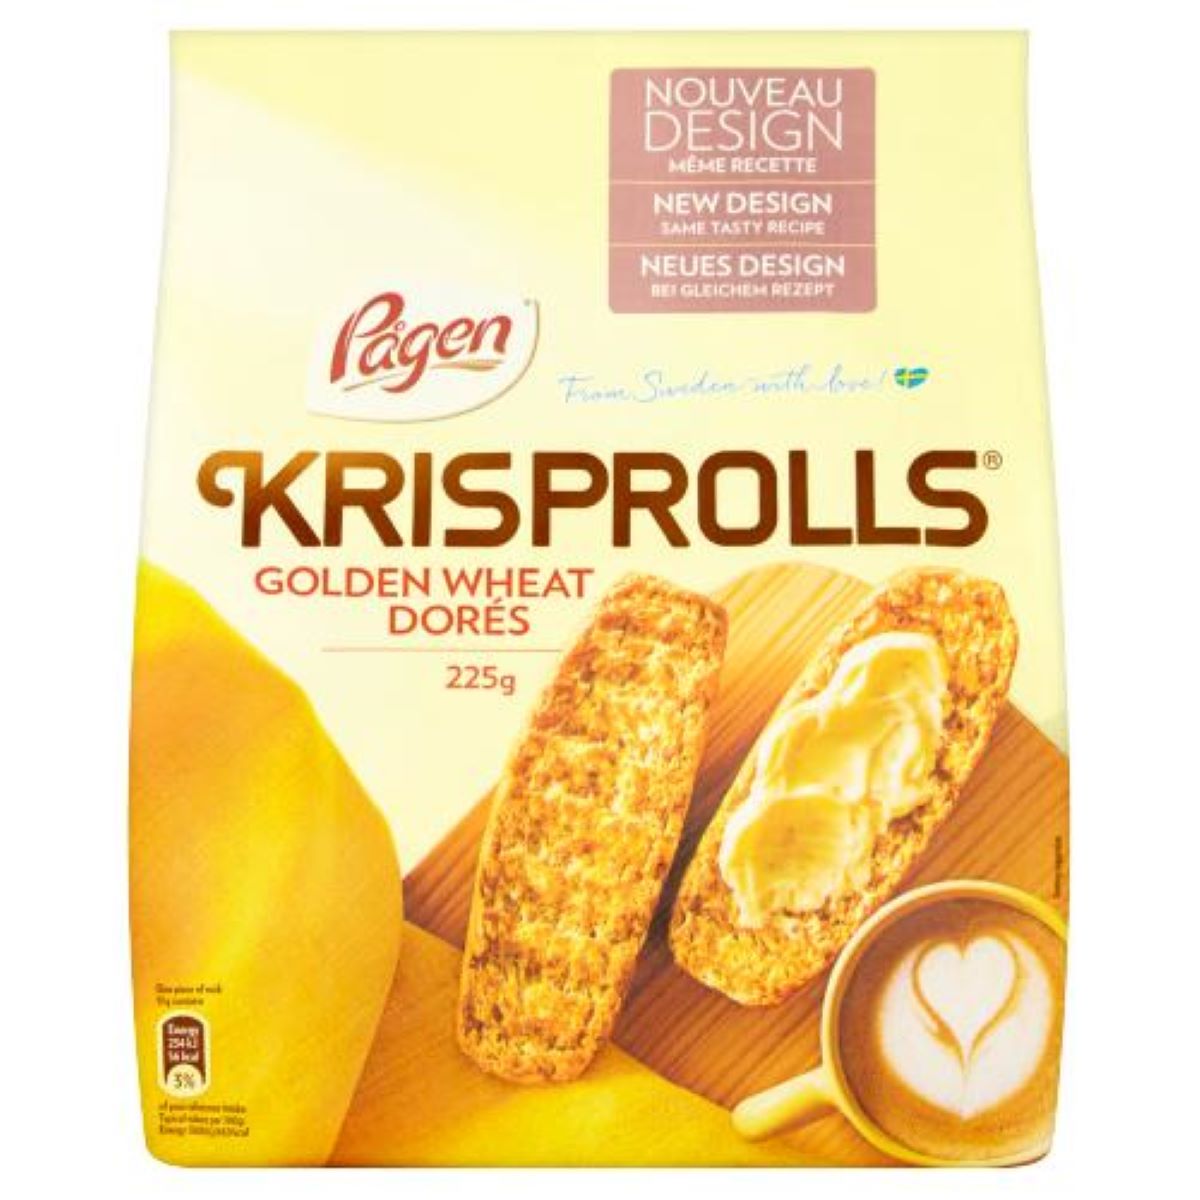 Krisprolls Golden Wheat 225g